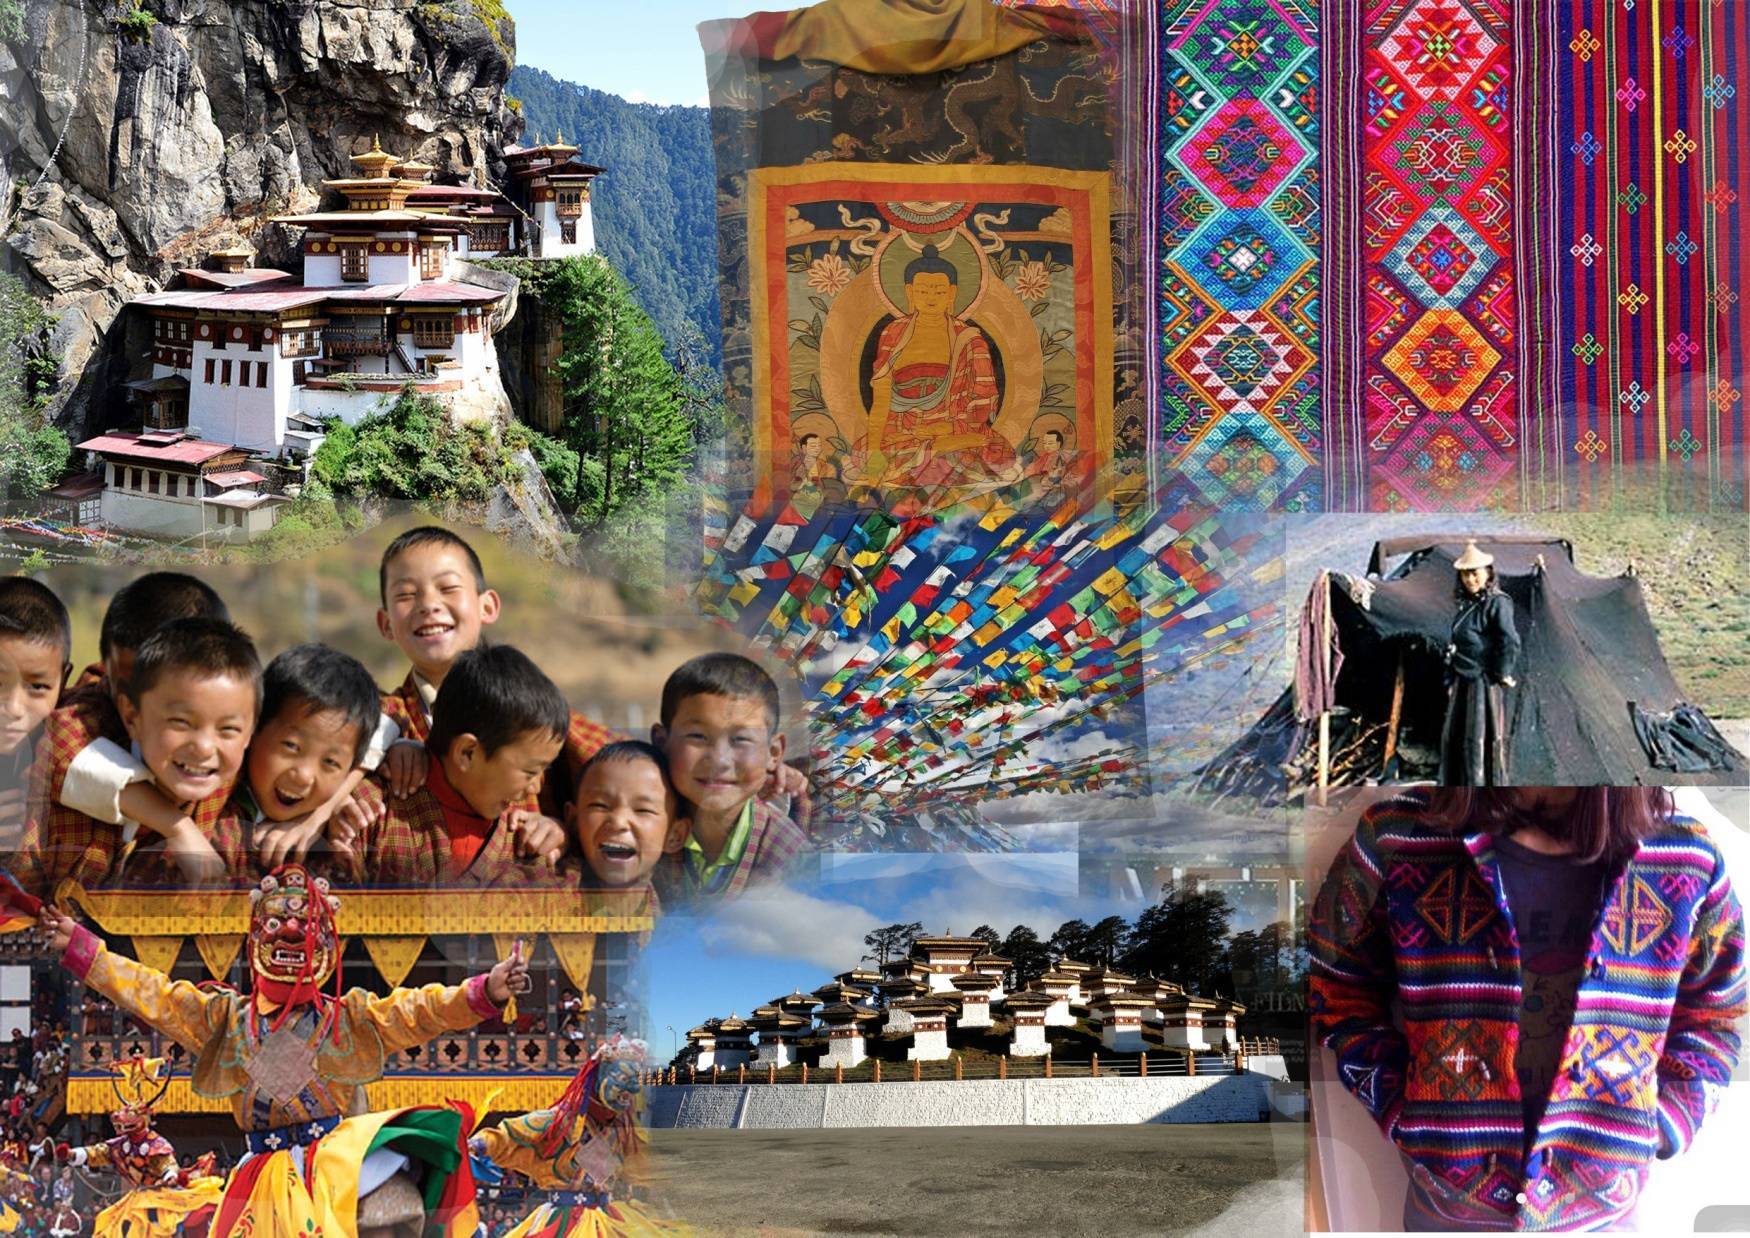 EU provides EUR 3.4 Million to support Bhutan’s tourism sector